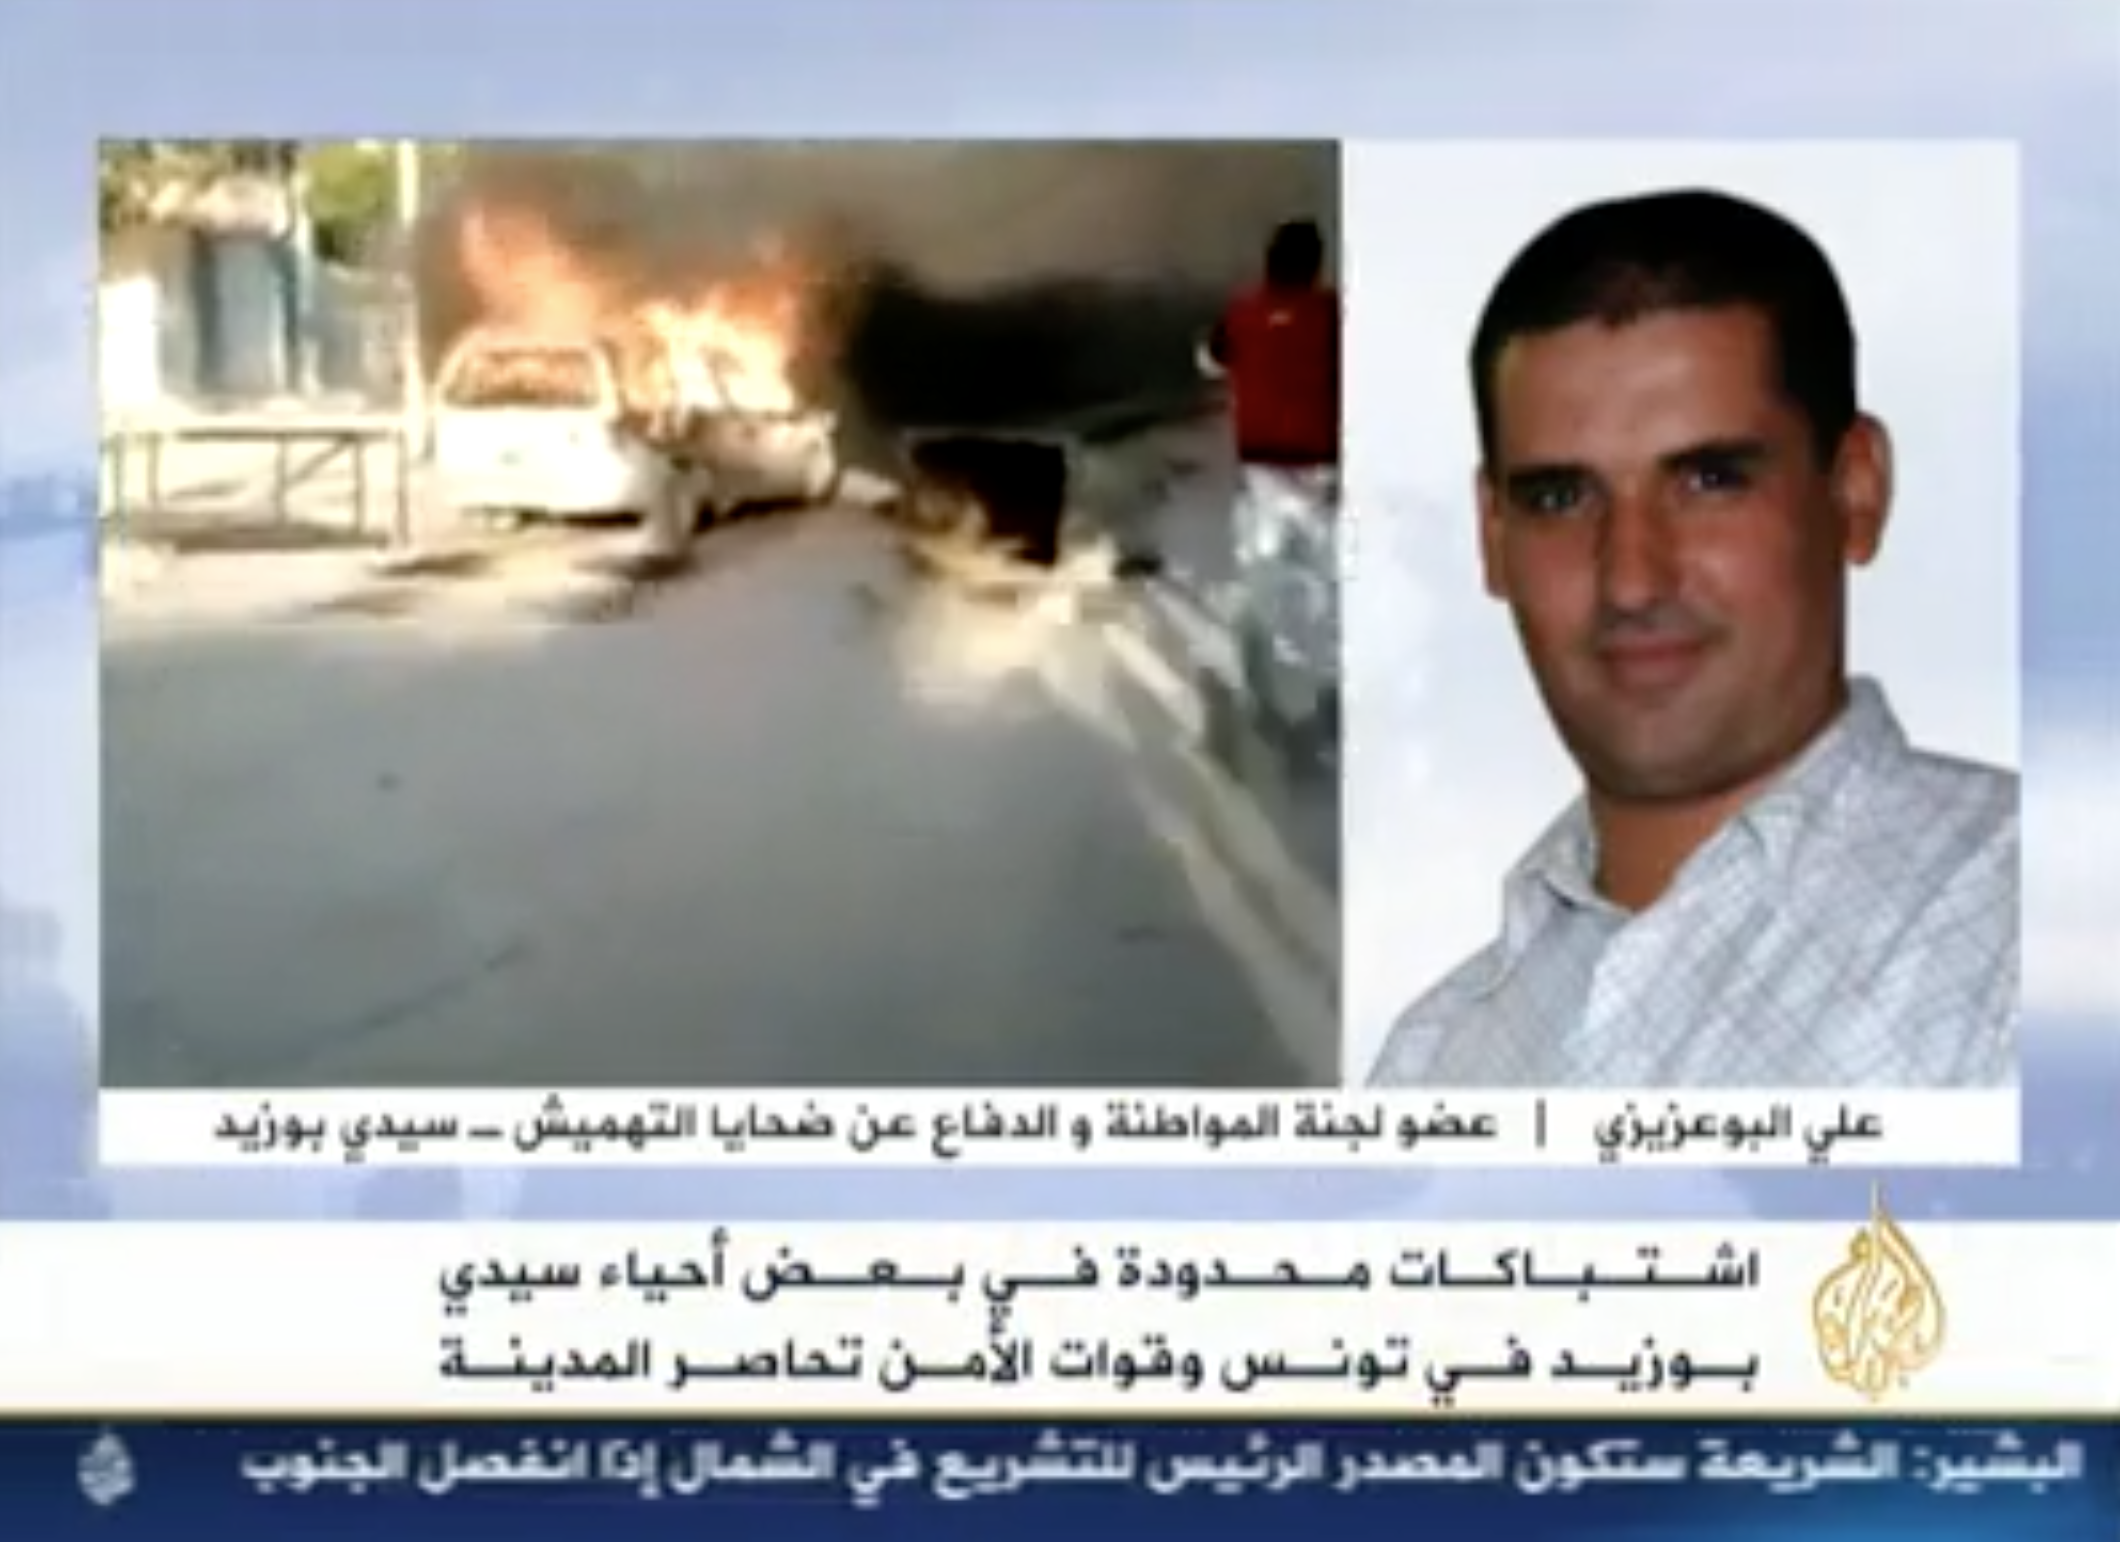 Le 19 janvier 2010, La moisson maghrébine — le JT d'Al Jazeera de 21 h — interview en direct Ali Bouazizi, un responsable local d'un parti d'opposition. En parallèle sont diffusées les images des premiers soulèvements, comme ici l'incinération d'une voiture du RCD, le parti du président Ben Ali. 